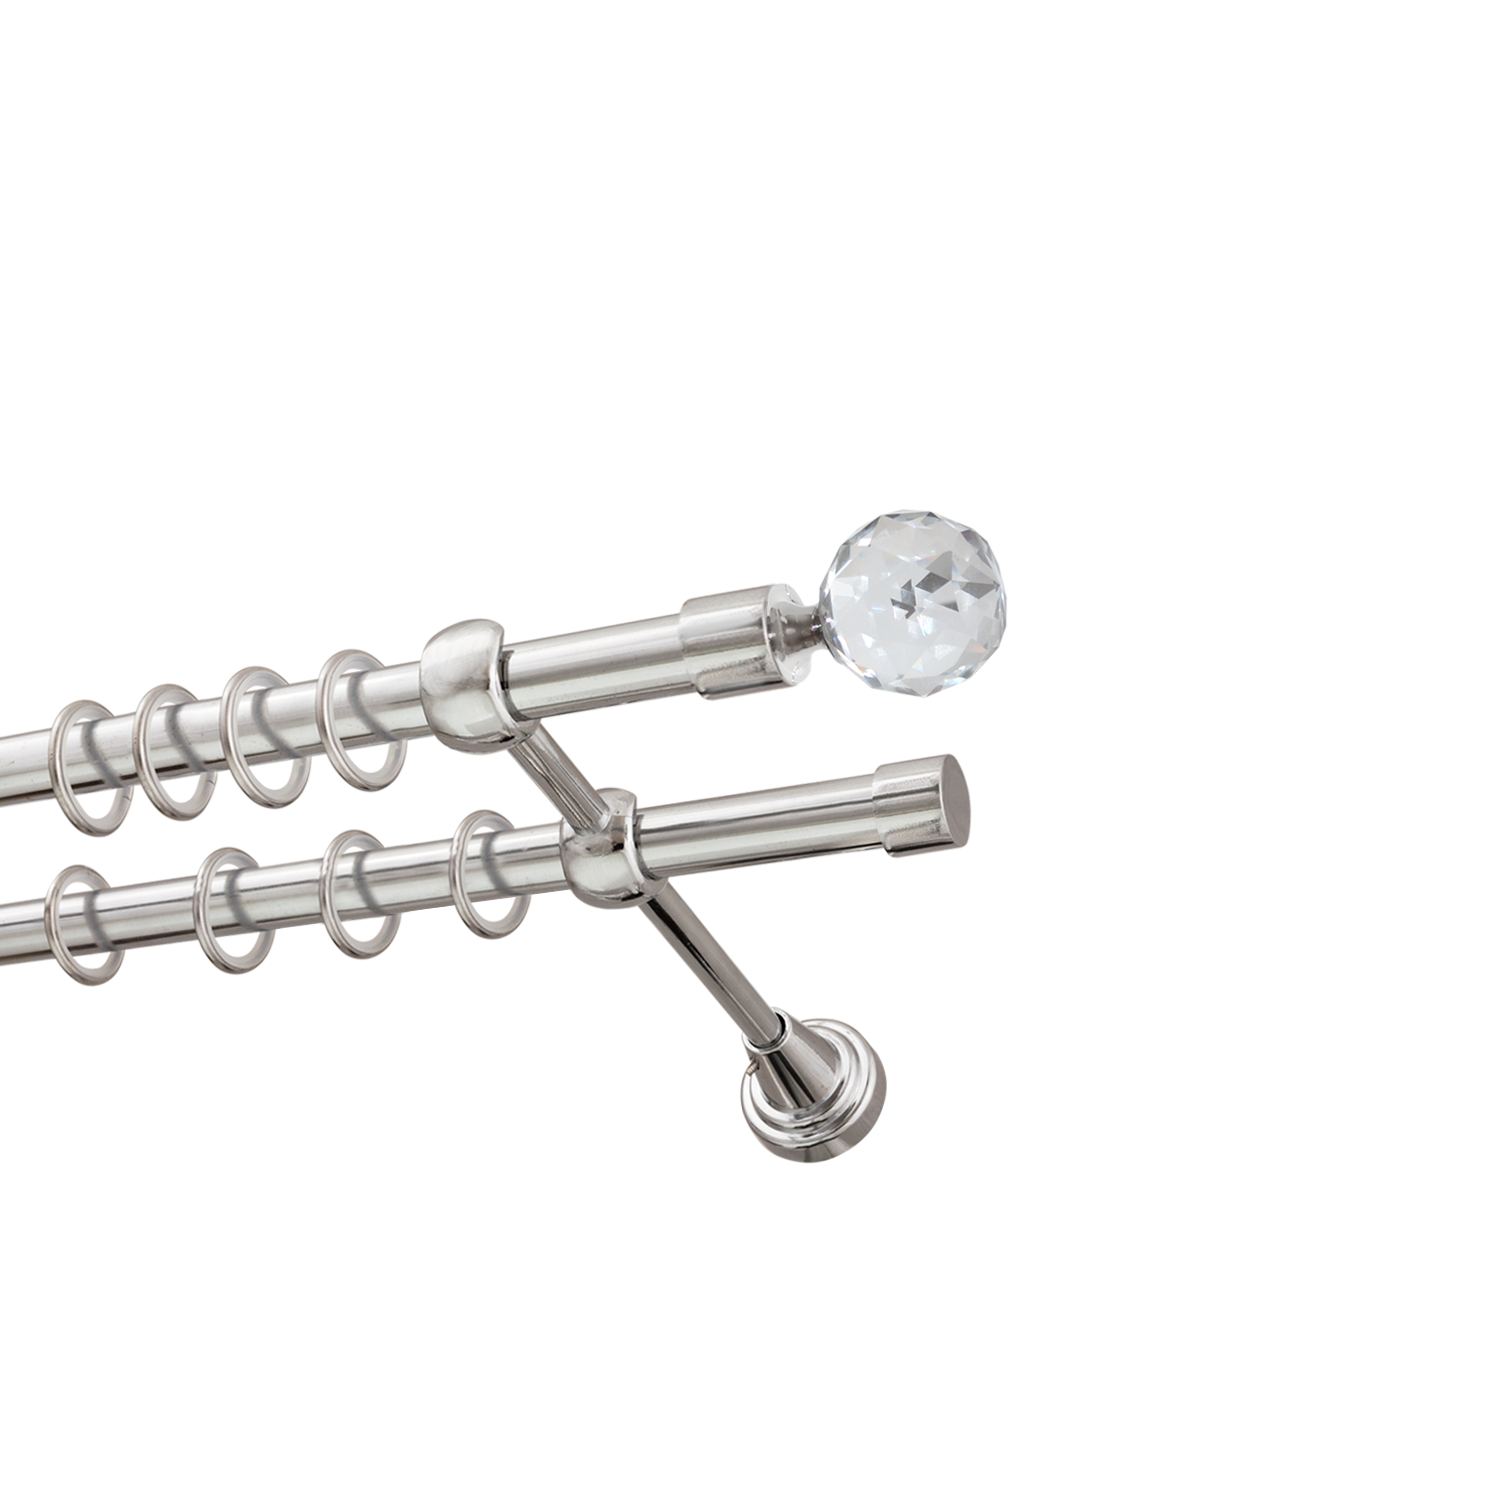 Металлический карниз для штор Карат, двухрядный 16/16 мм, серебро, гладкая штанга, длина 200 см